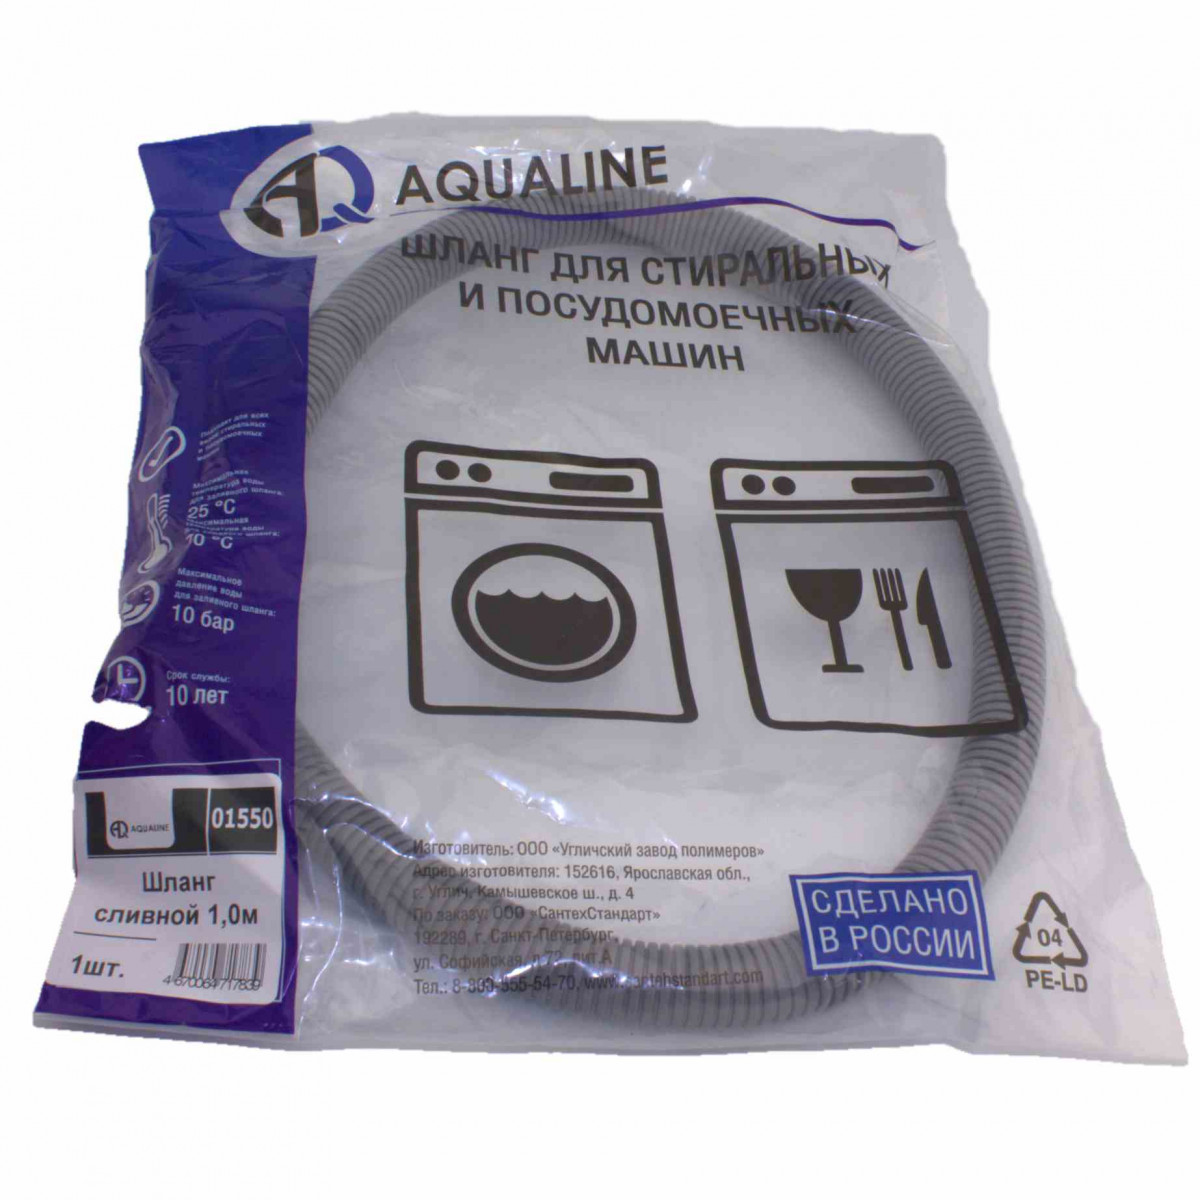 AQUALINE Шланг сливной для стиральных и посудомоечных машин 1,0 м, 01550